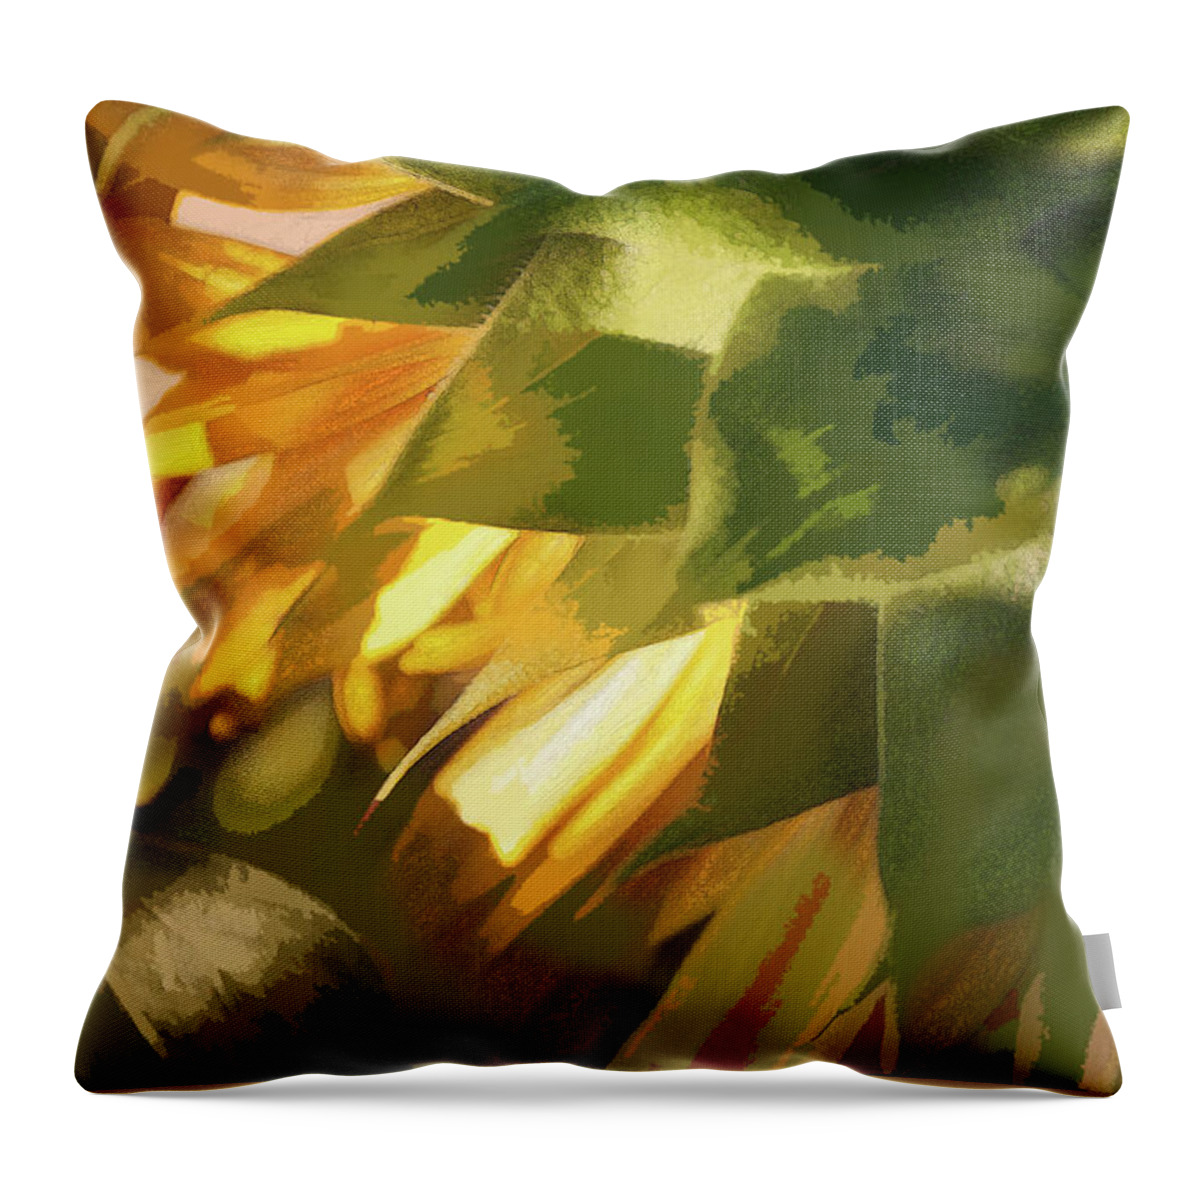 Sunflower Throw Pillow featuring the photograph Burst - by Julie Weber